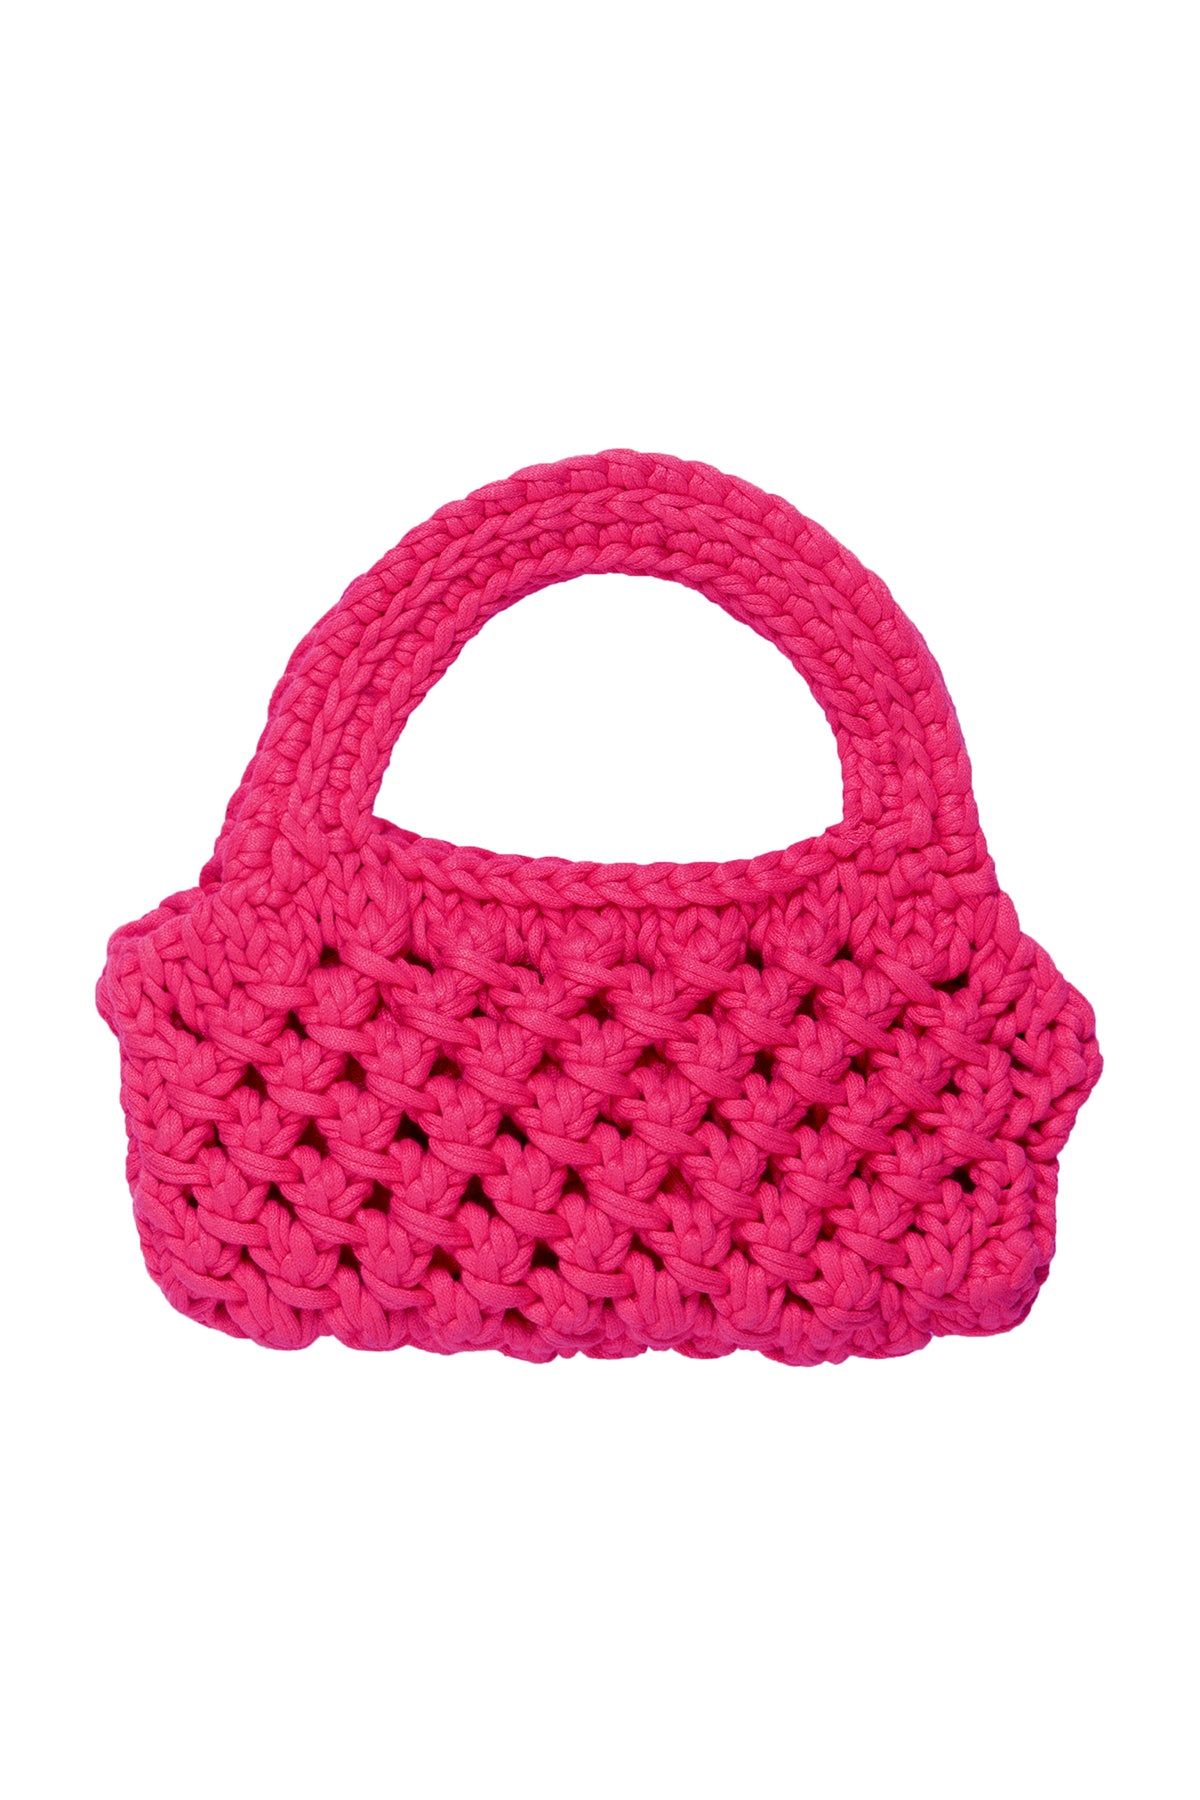   Bennie Crochet Bag in Pink  